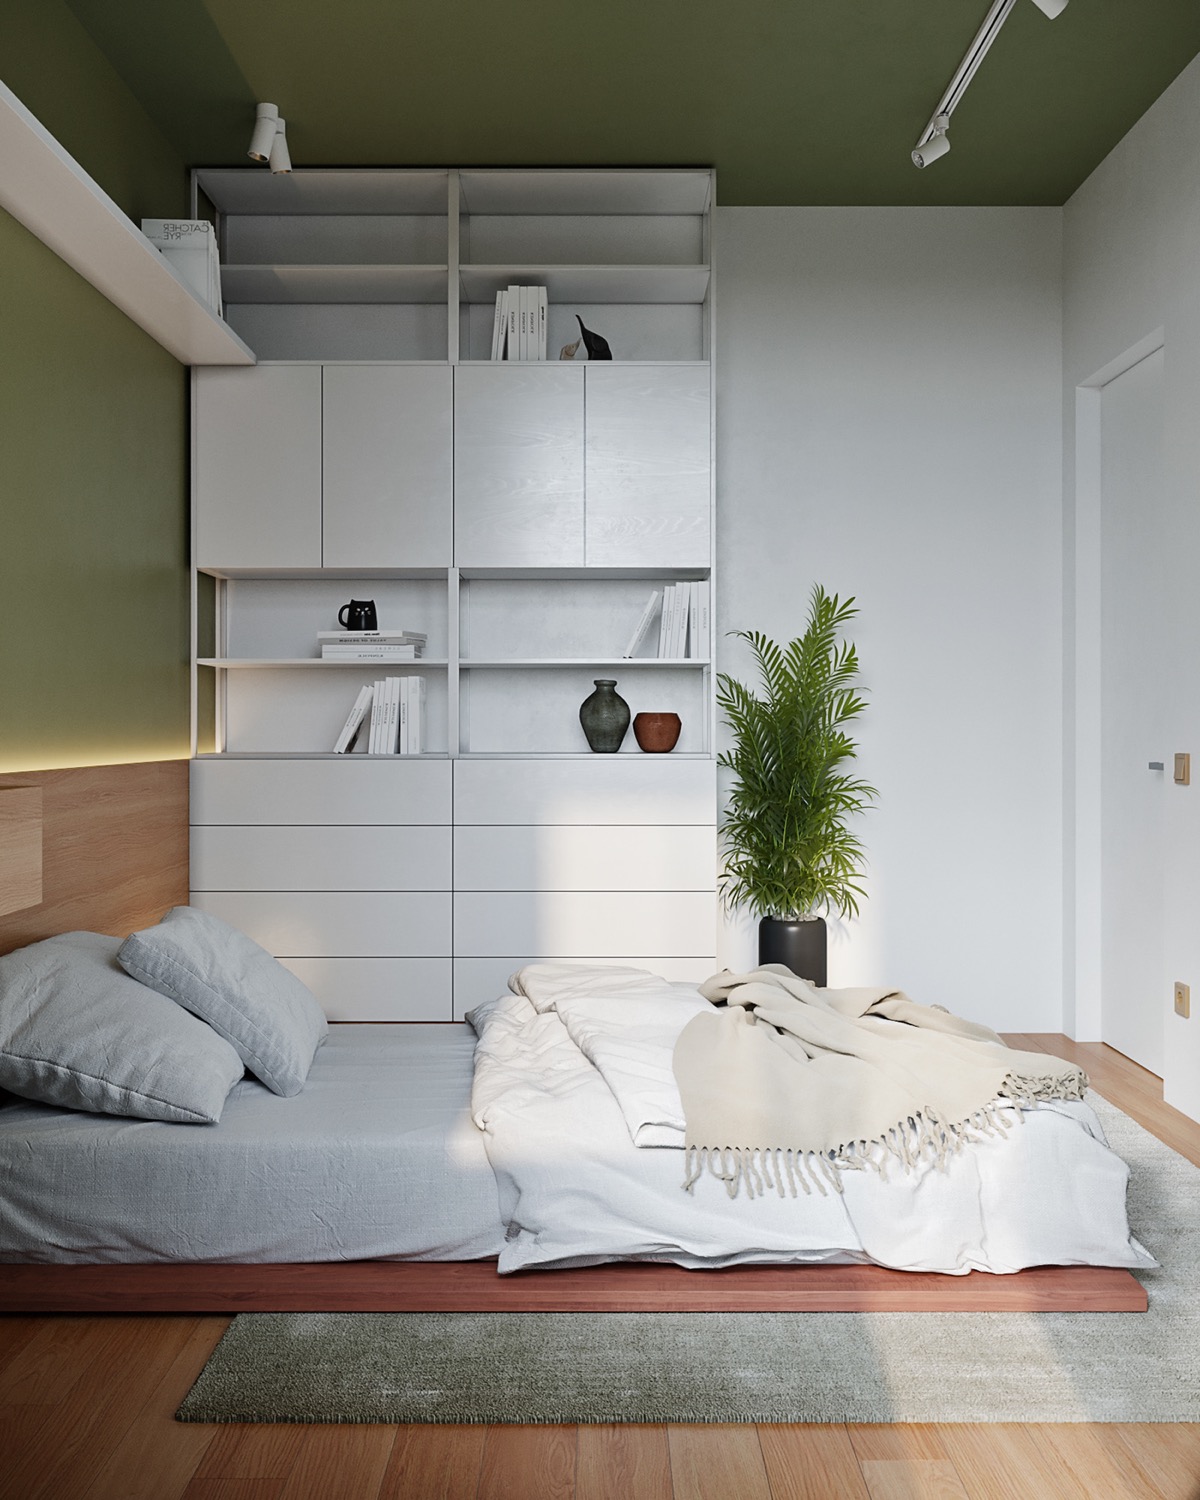 Hình ảnh một góc phòng ngủ với tủ quần áo màu trắng cao kịch trần, giường thấp sàn